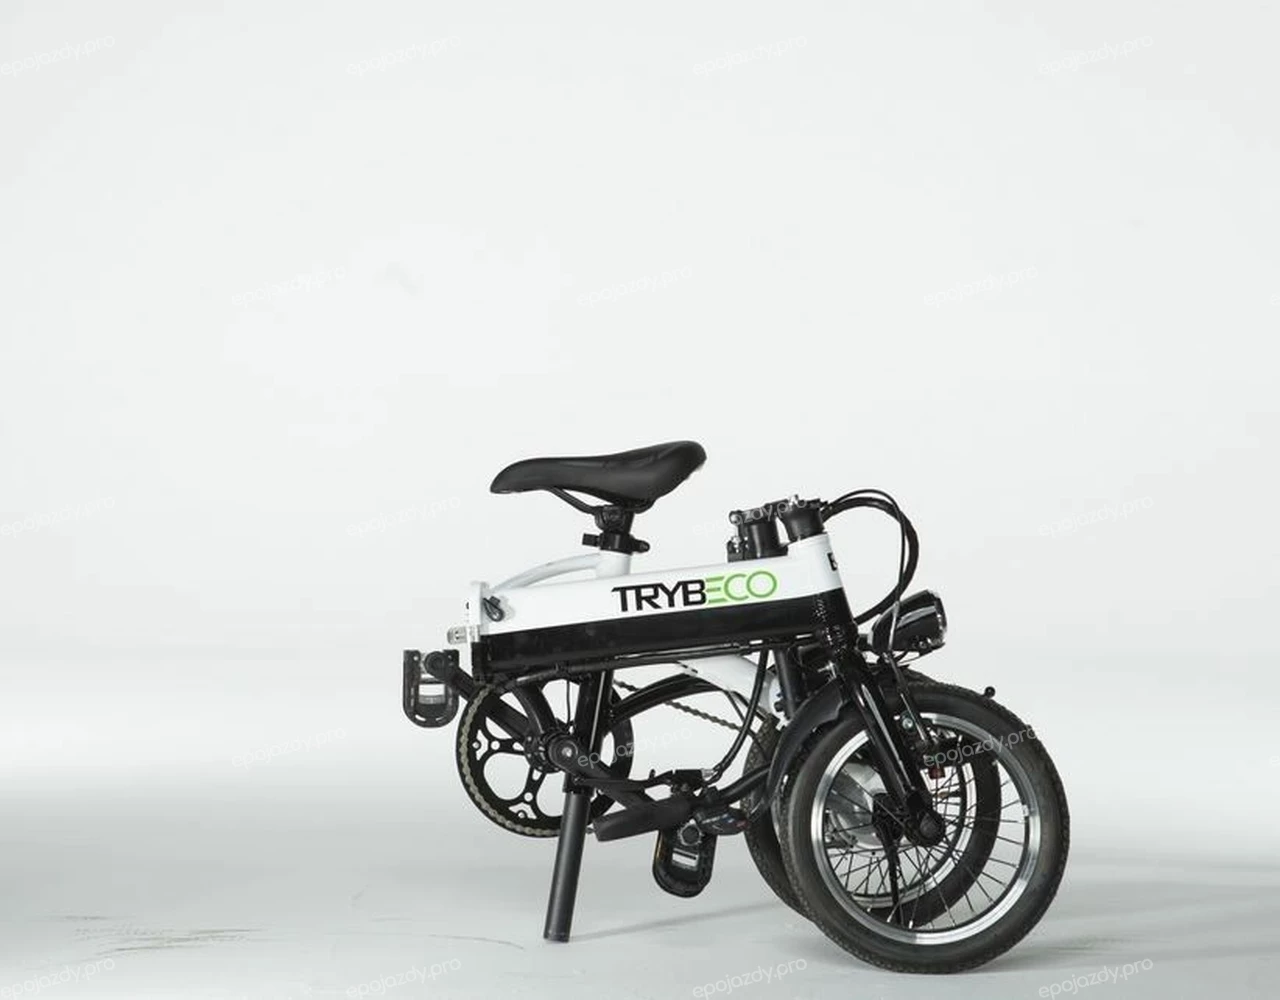 Elektryczny rower Trybeco Compacta 14 jest składany